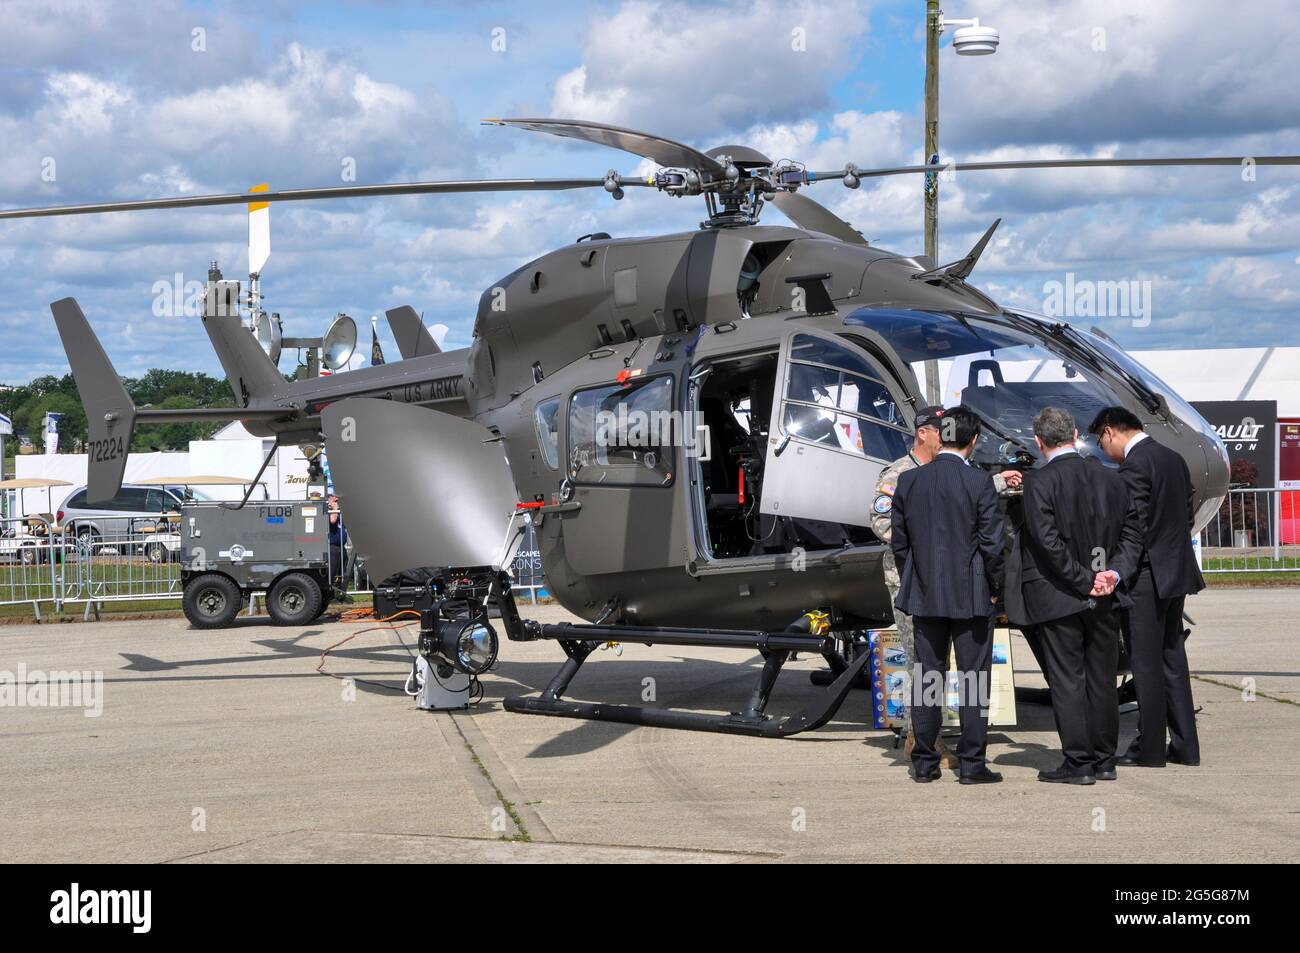 HUBSCHRAUBER DER US Army EADS North America UH-72A Lakota auf der Farnborough International Airshow Messe 2012, Großbritannien. Zone der Aerospace Industries Association Stockfoto